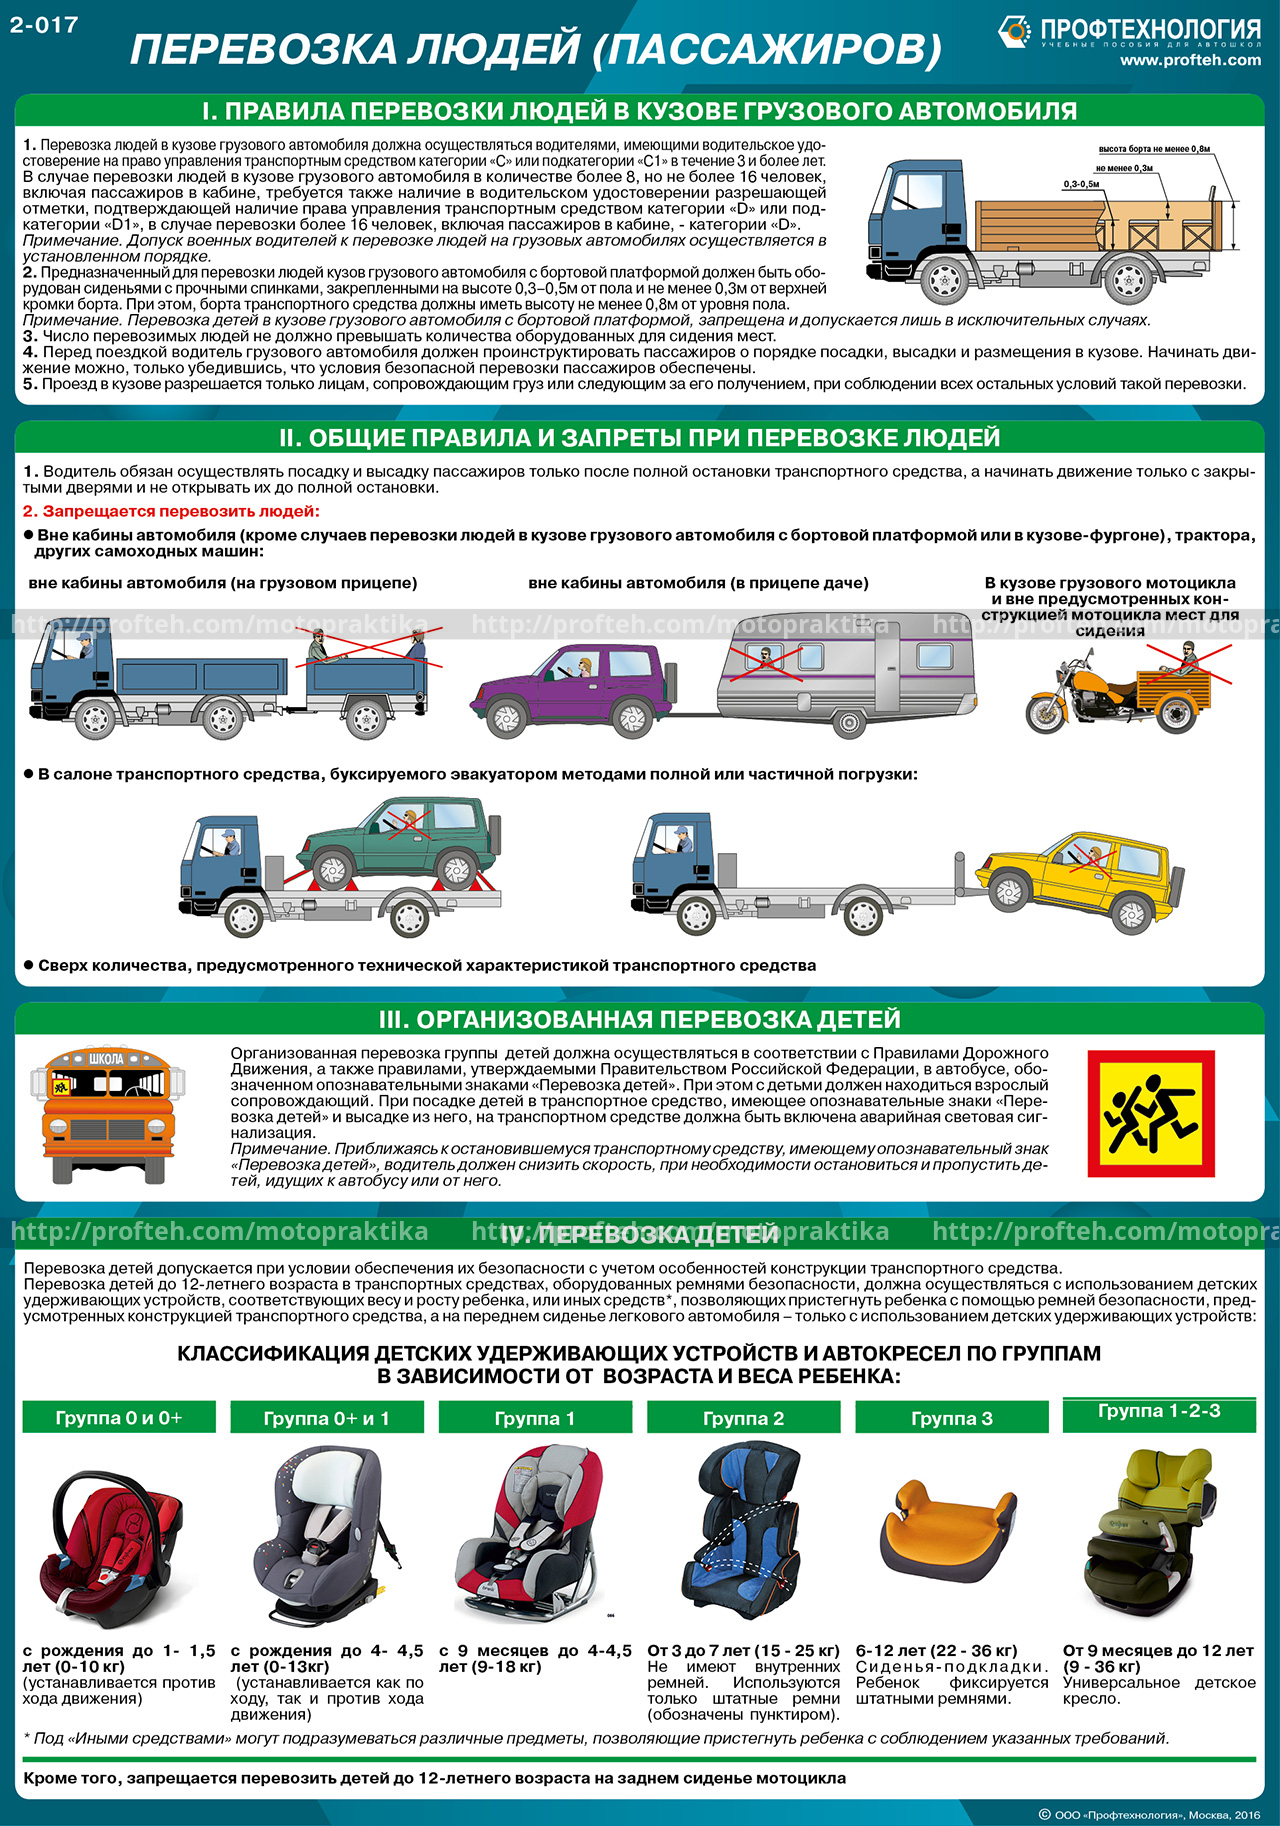 Контроль и надзор за перевозчиками опасных грузов – штрафы, разрешения, права